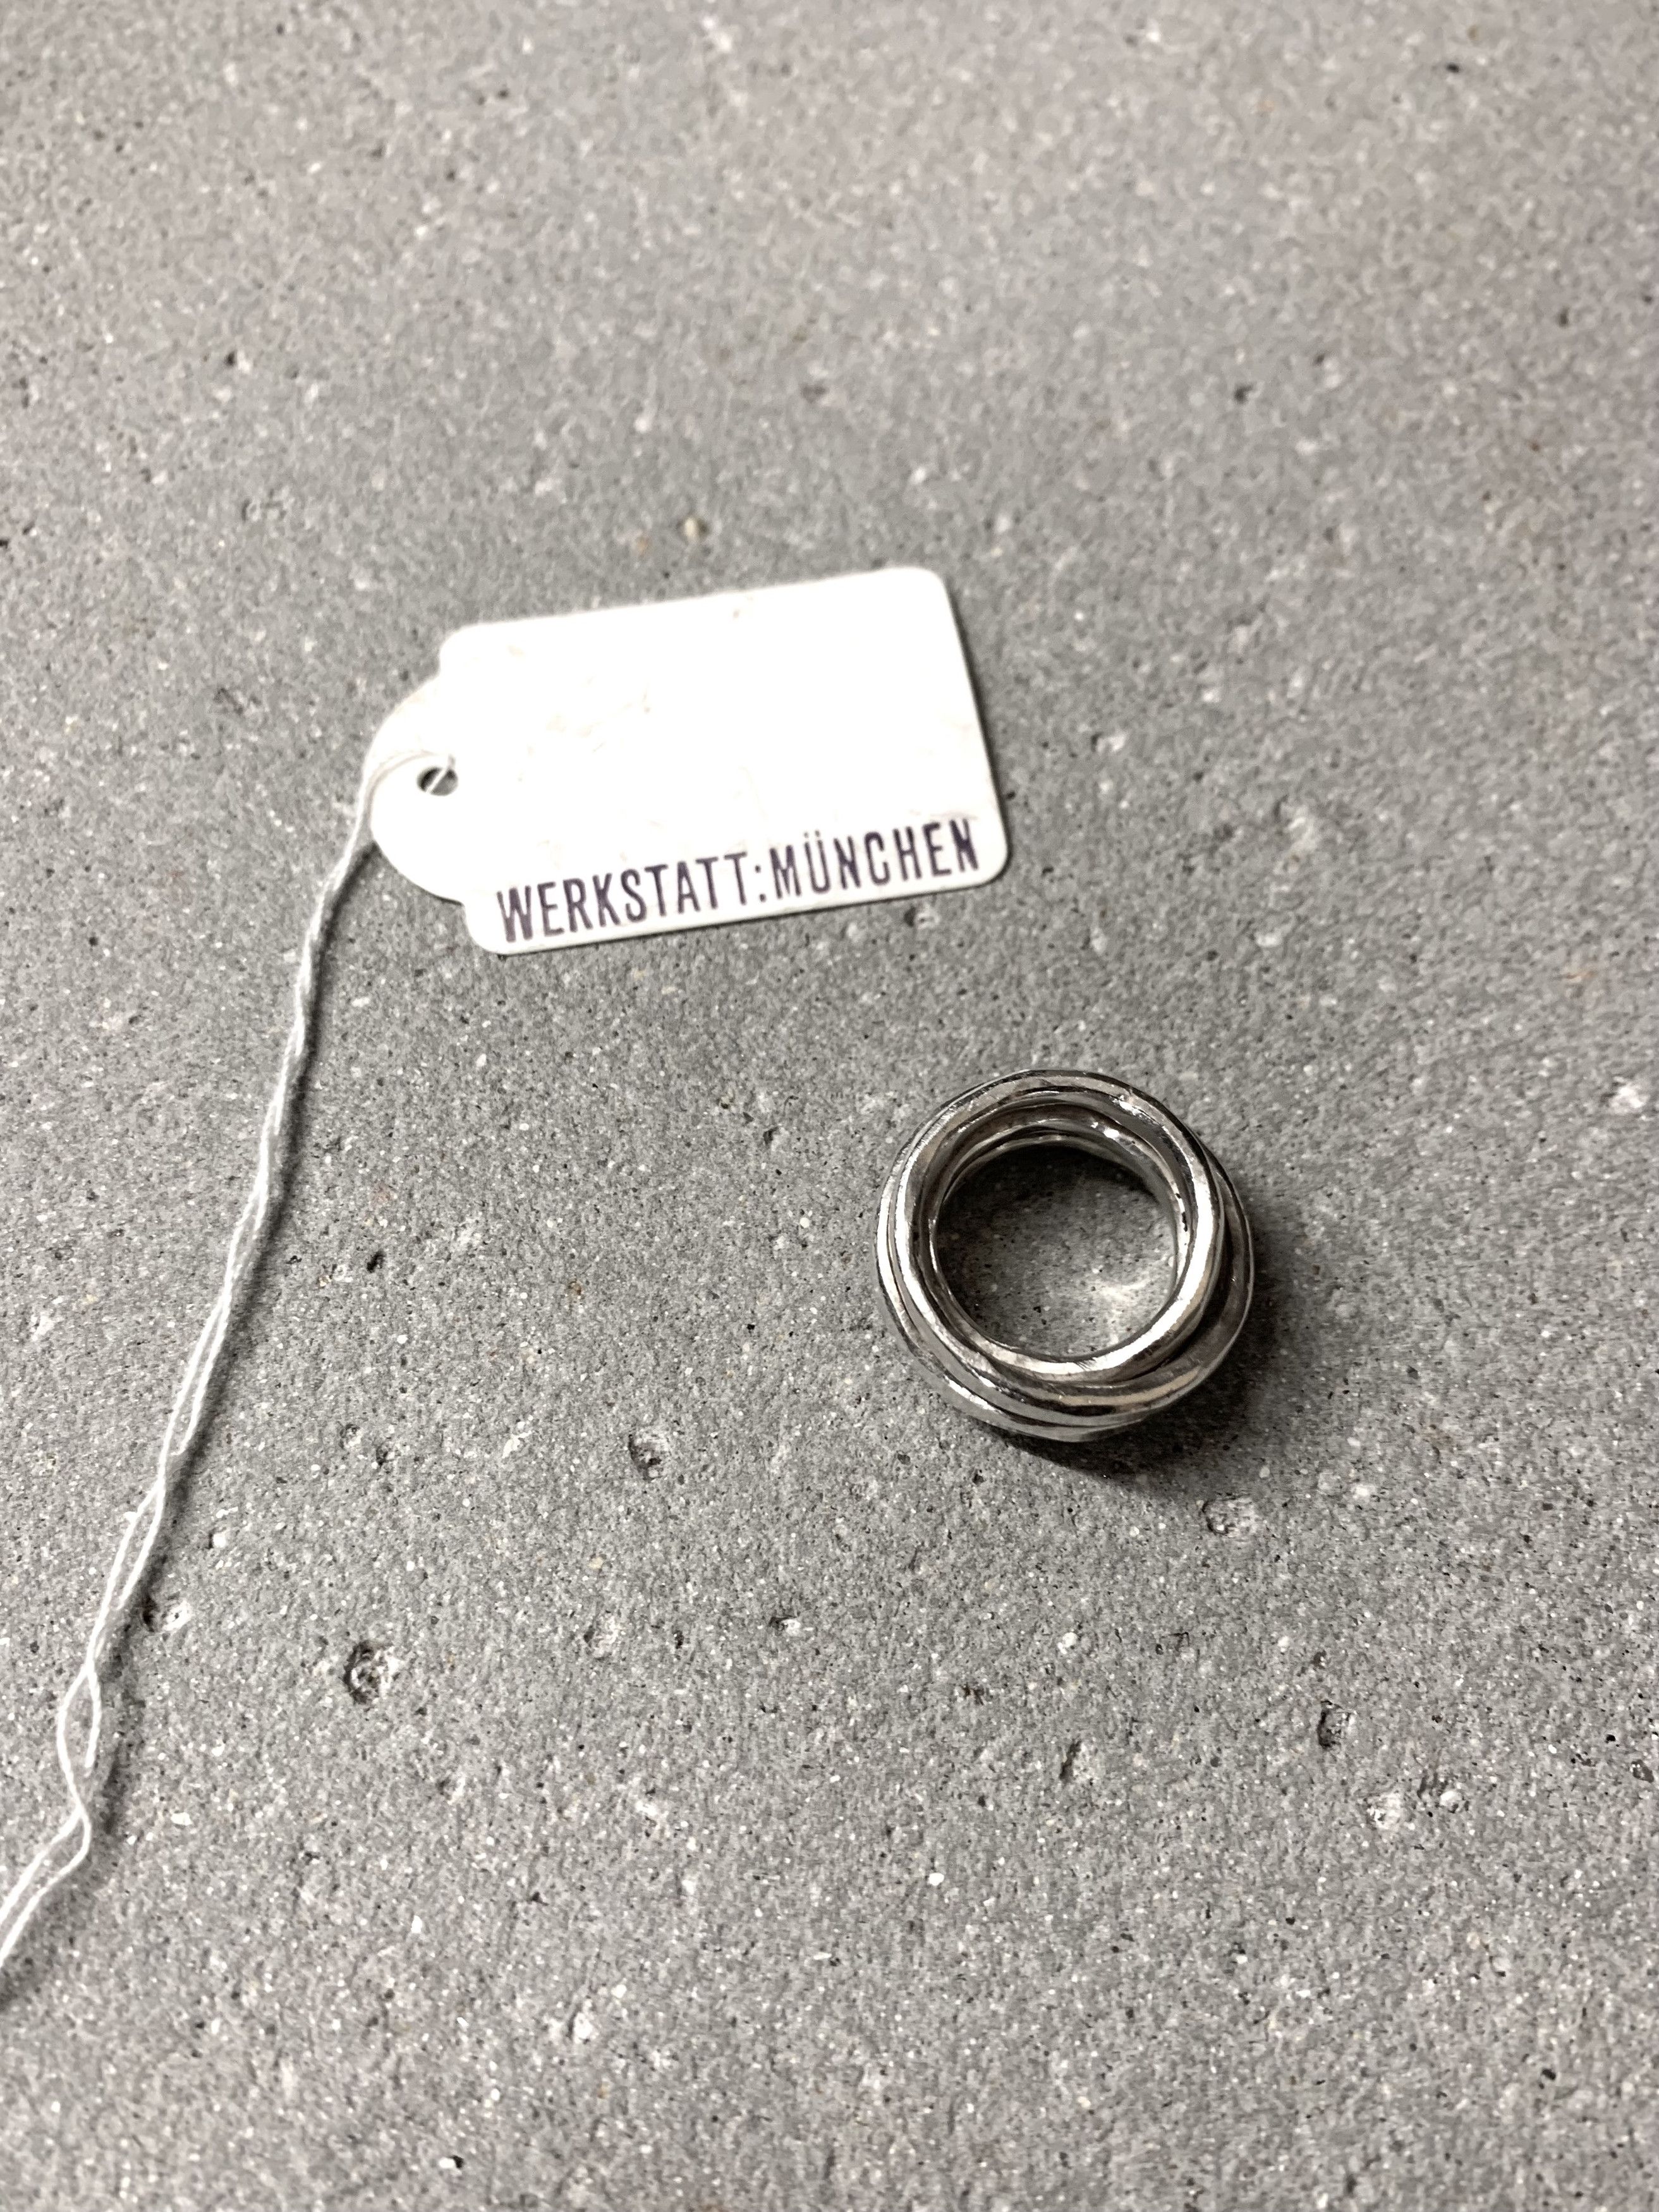 Werkstatt Munchen WERKSTATT:MÜNCHEN wound ring hammered | Grailed